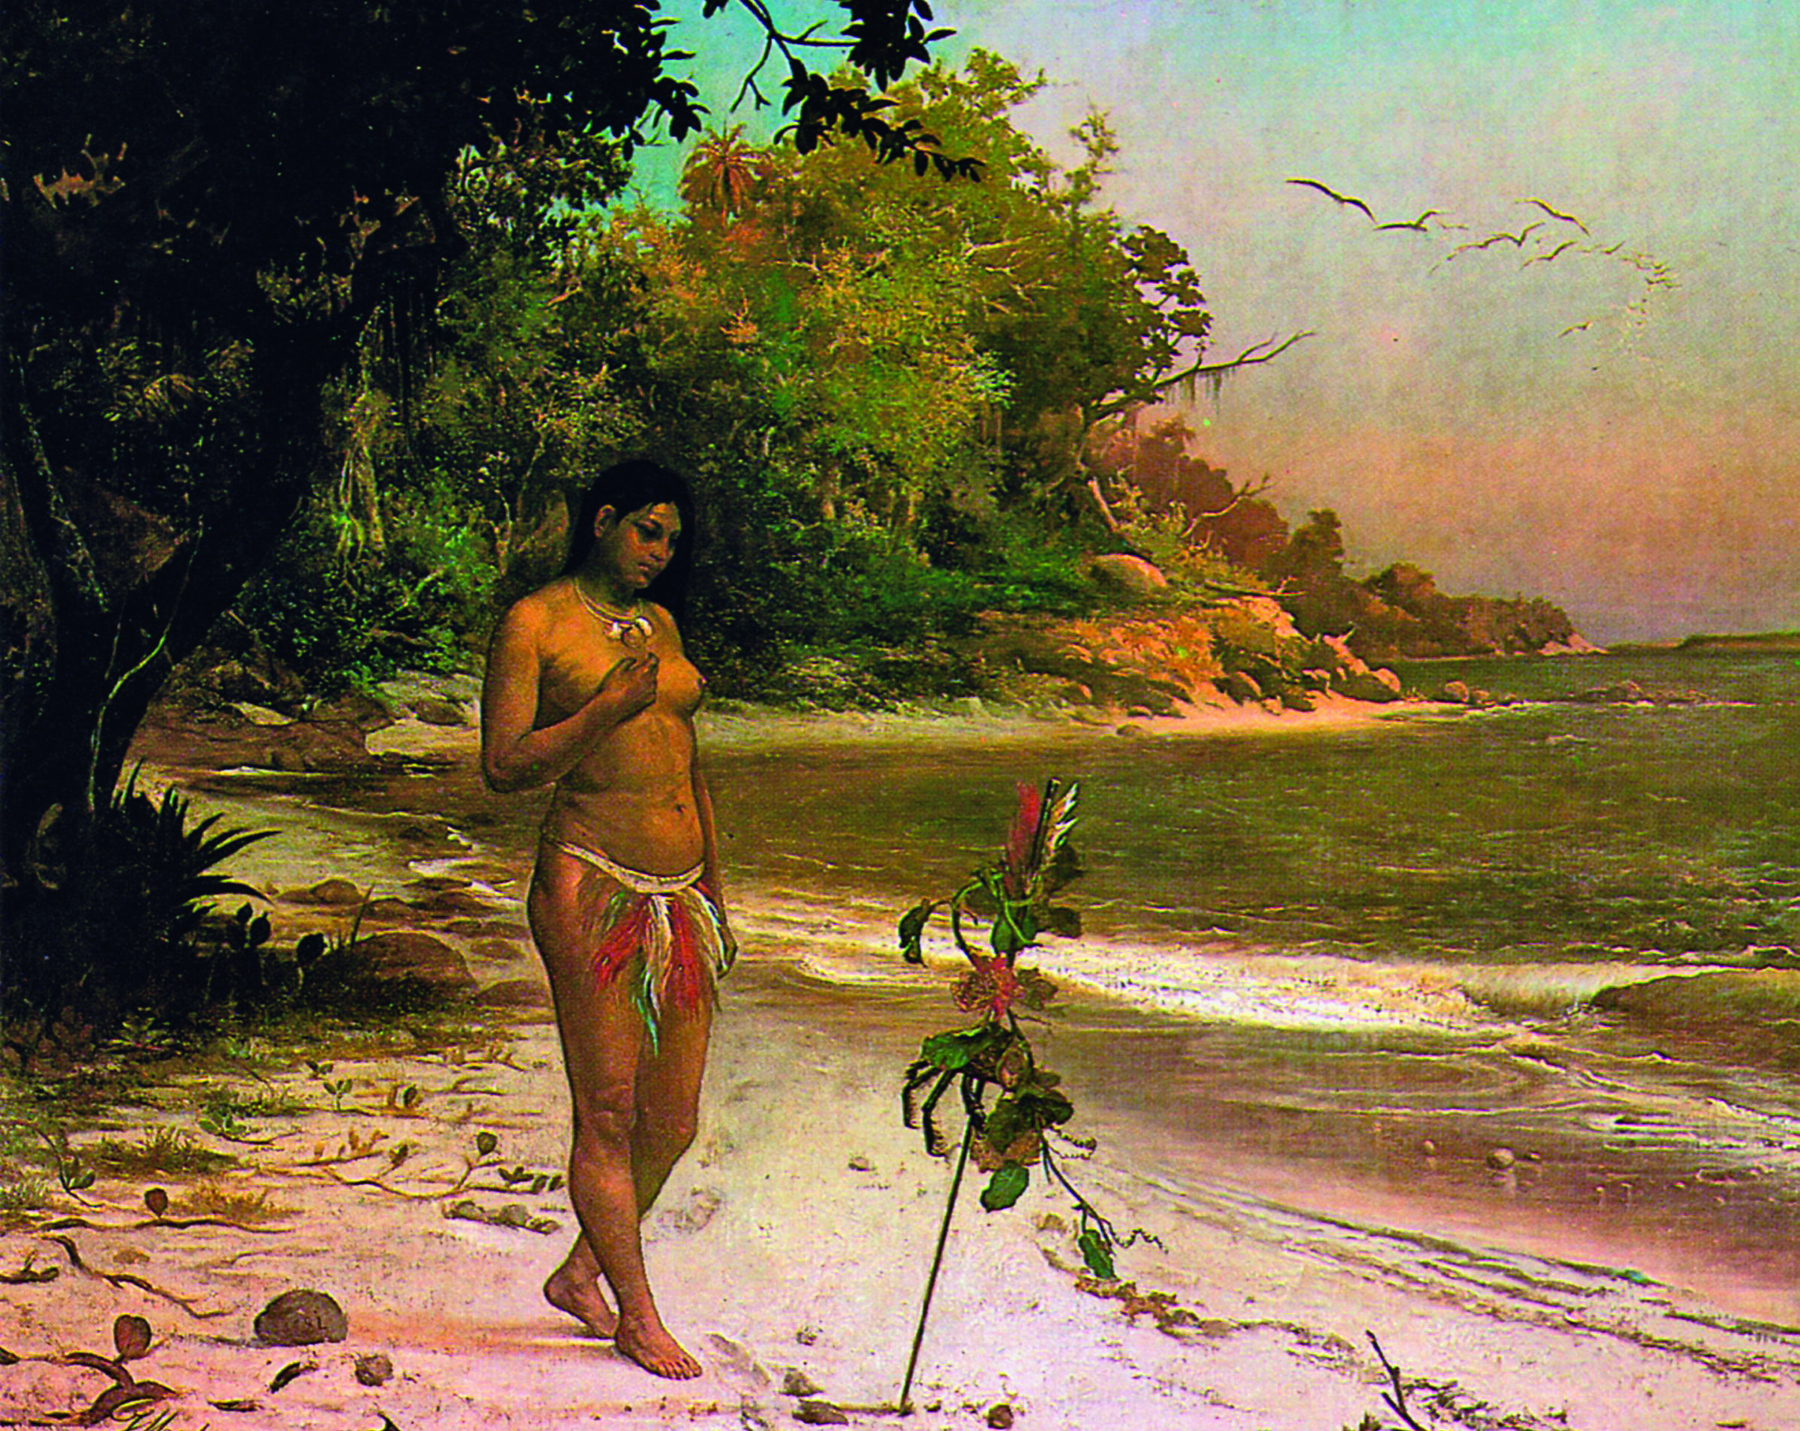 Pintura. Mulher indígena na praia. Ela está em pé, cobrindo um dos seios com a mão. A parte de baixo está coberta por um enfeite de penas coloridas. Tem o cabelo longo e escuro caído de lado. Ao redor dela muitas árvores e o mar.